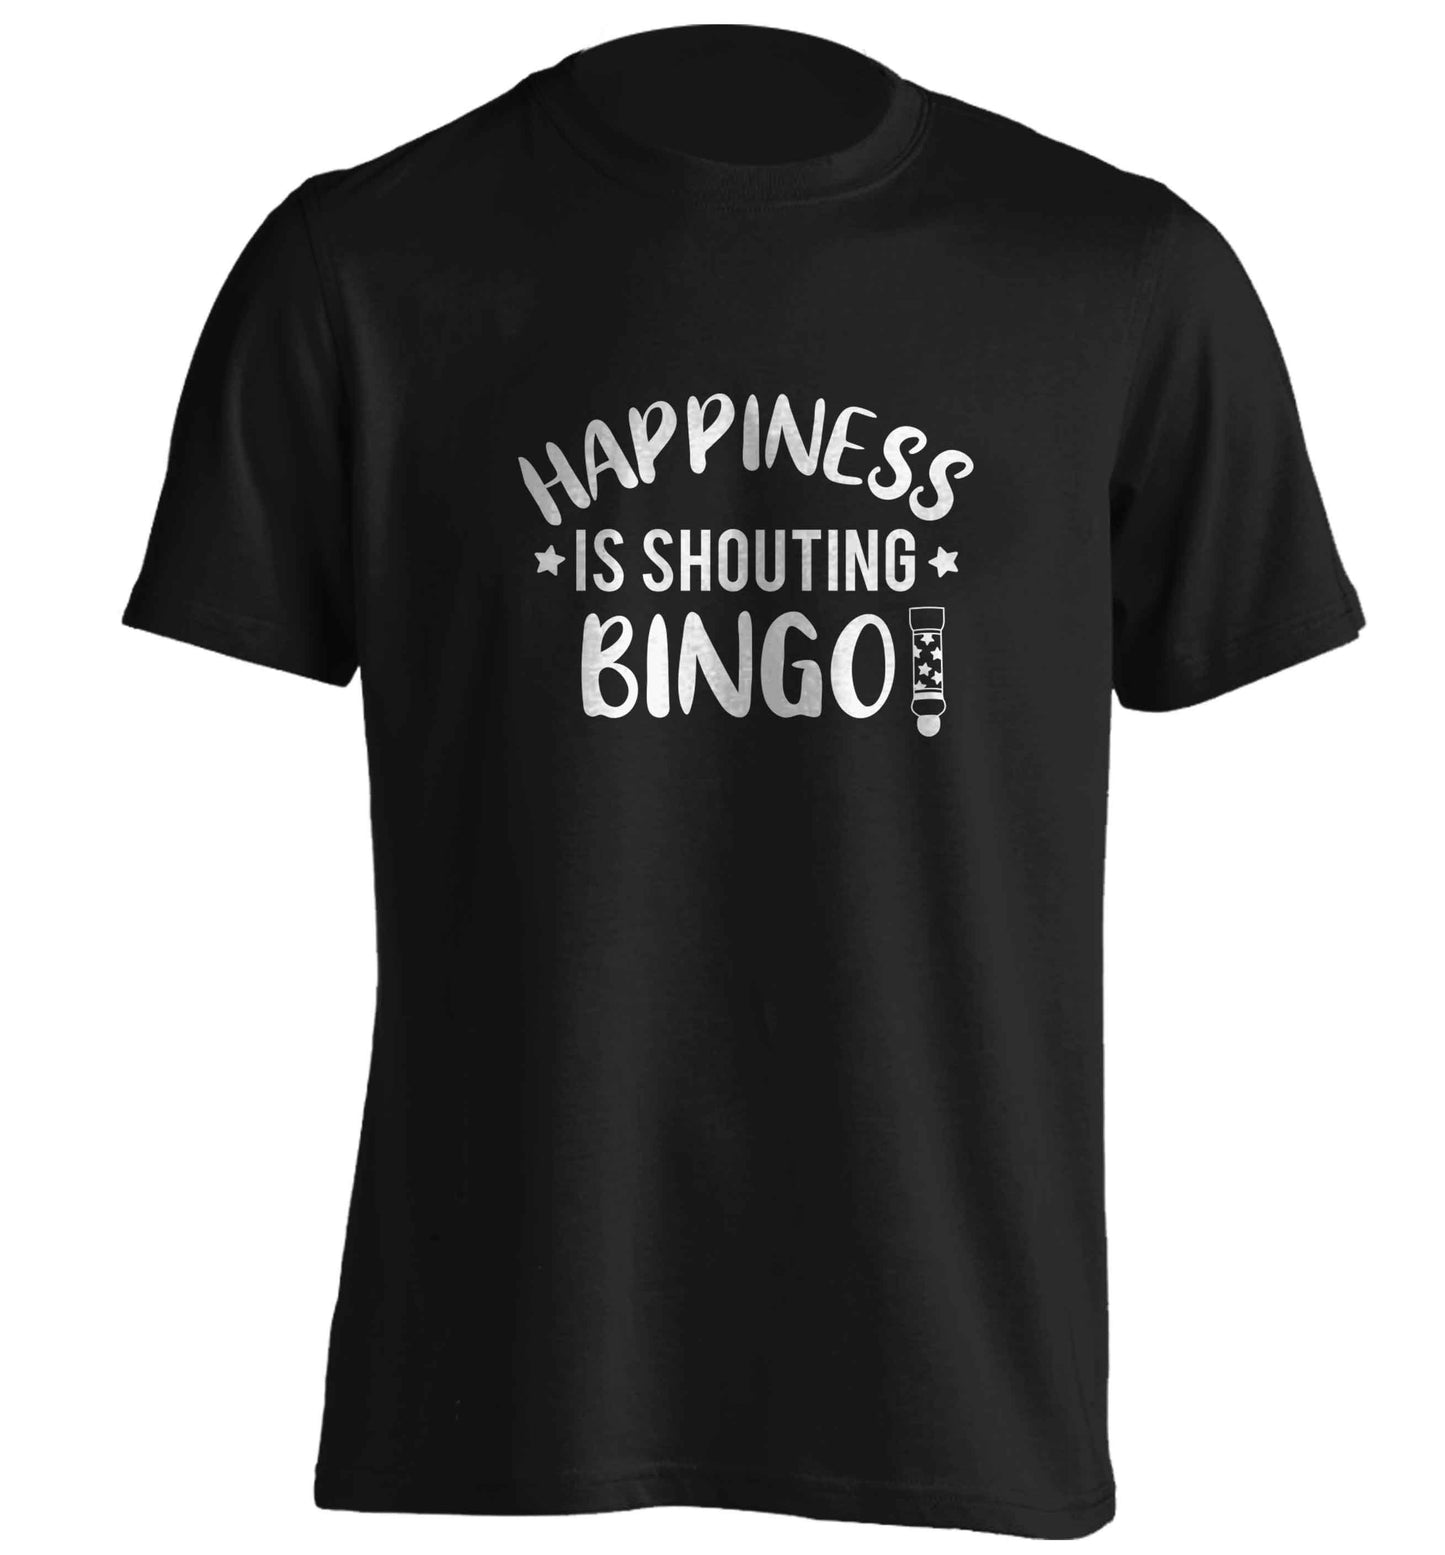 Happiness is shouting bingo! adults unisex black Tshirt 2XL